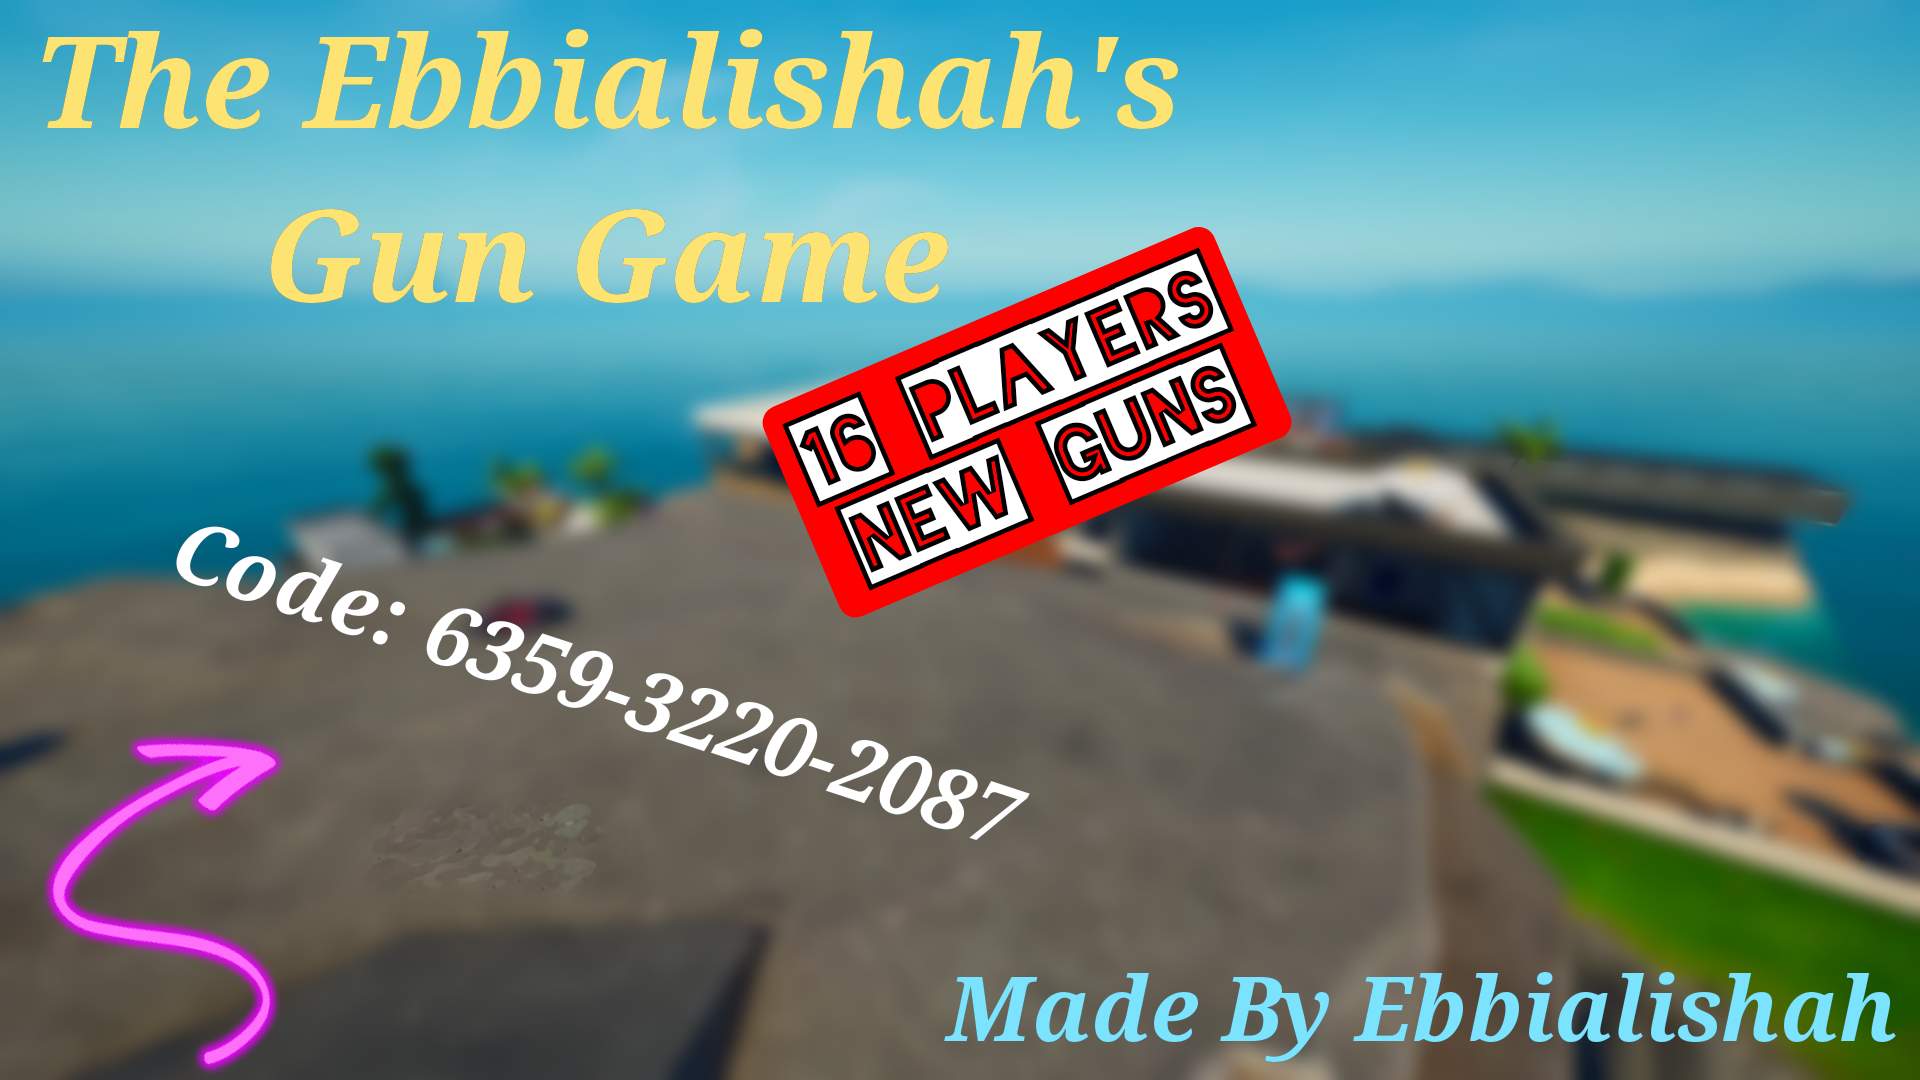 EBBIALISHAH'S GUN GAME